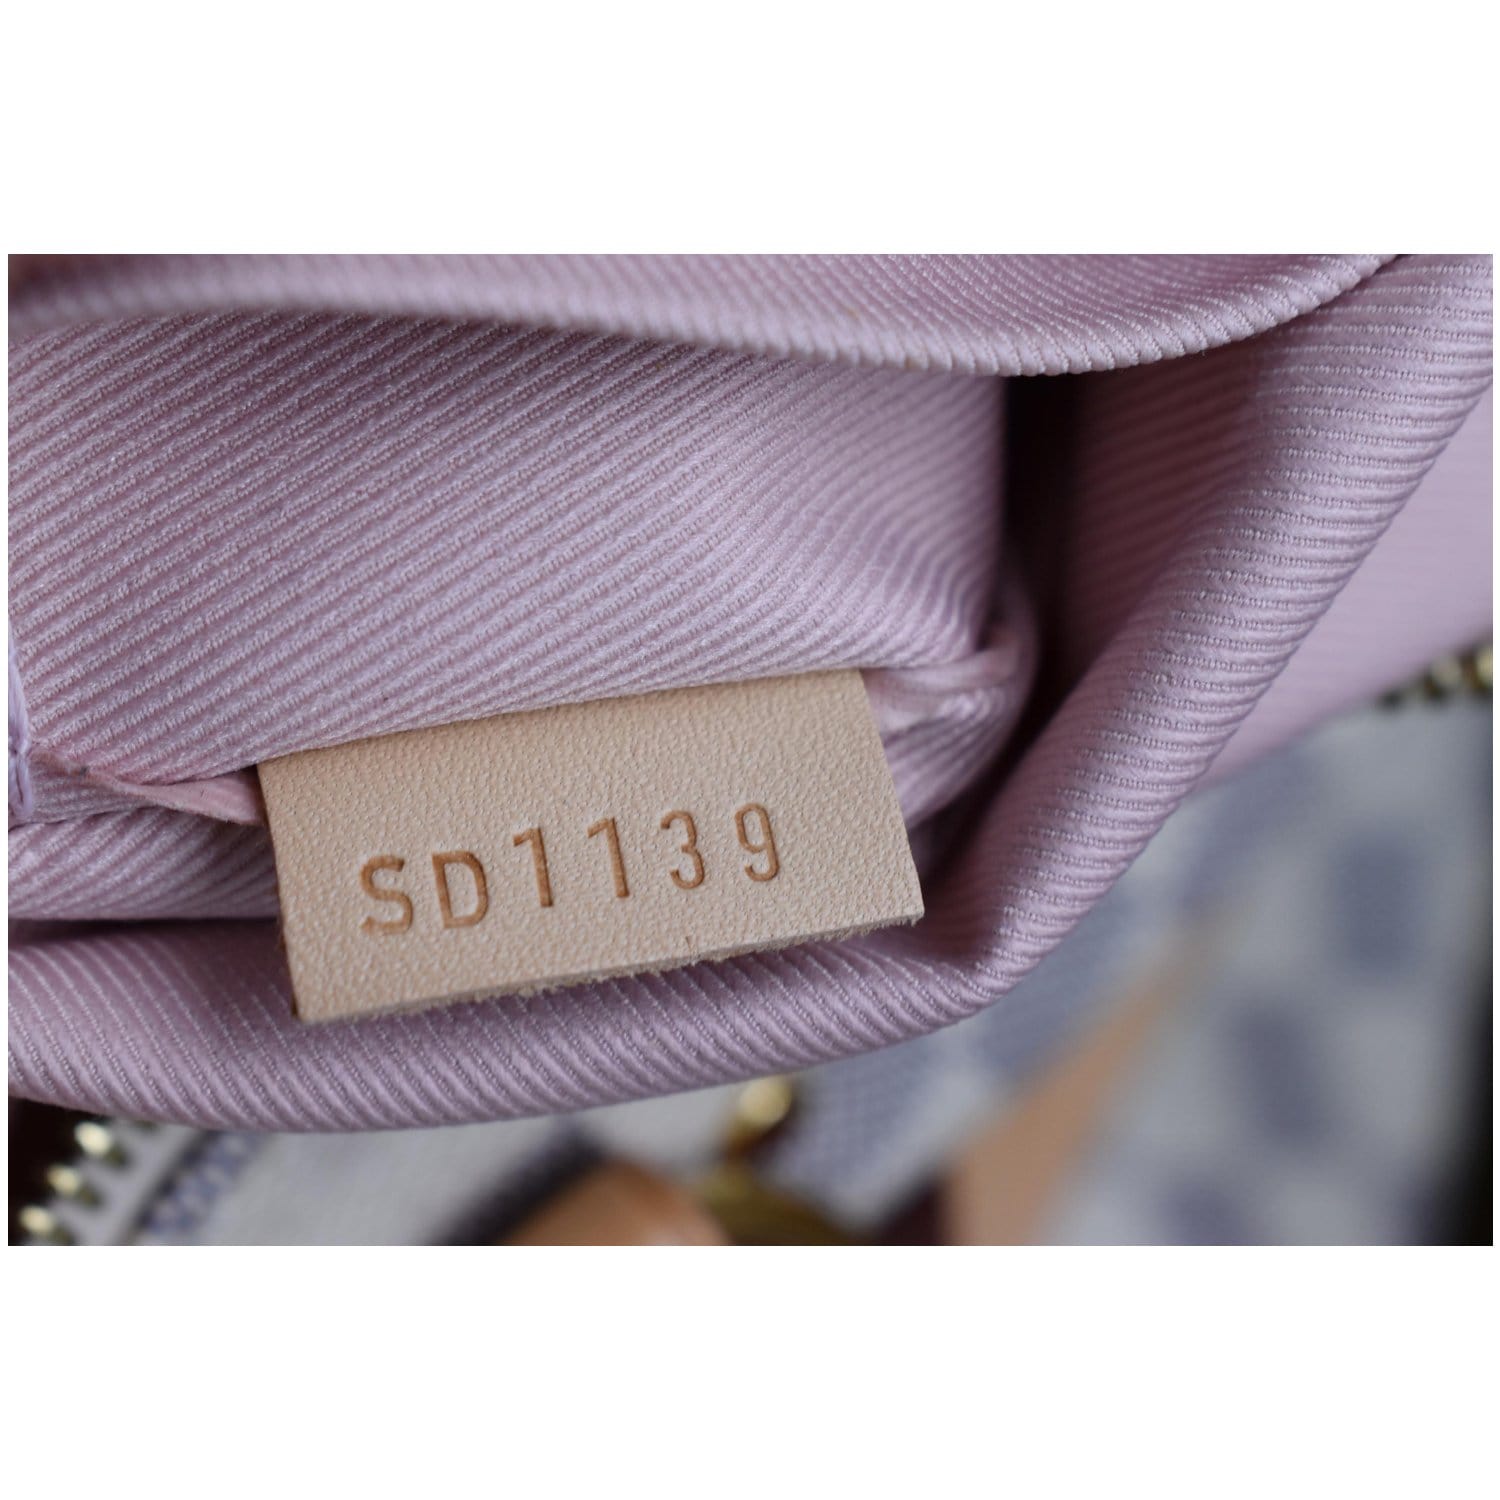 Louis Vuitton Damier Azur Lymington - Neutrals Totes, Handbags